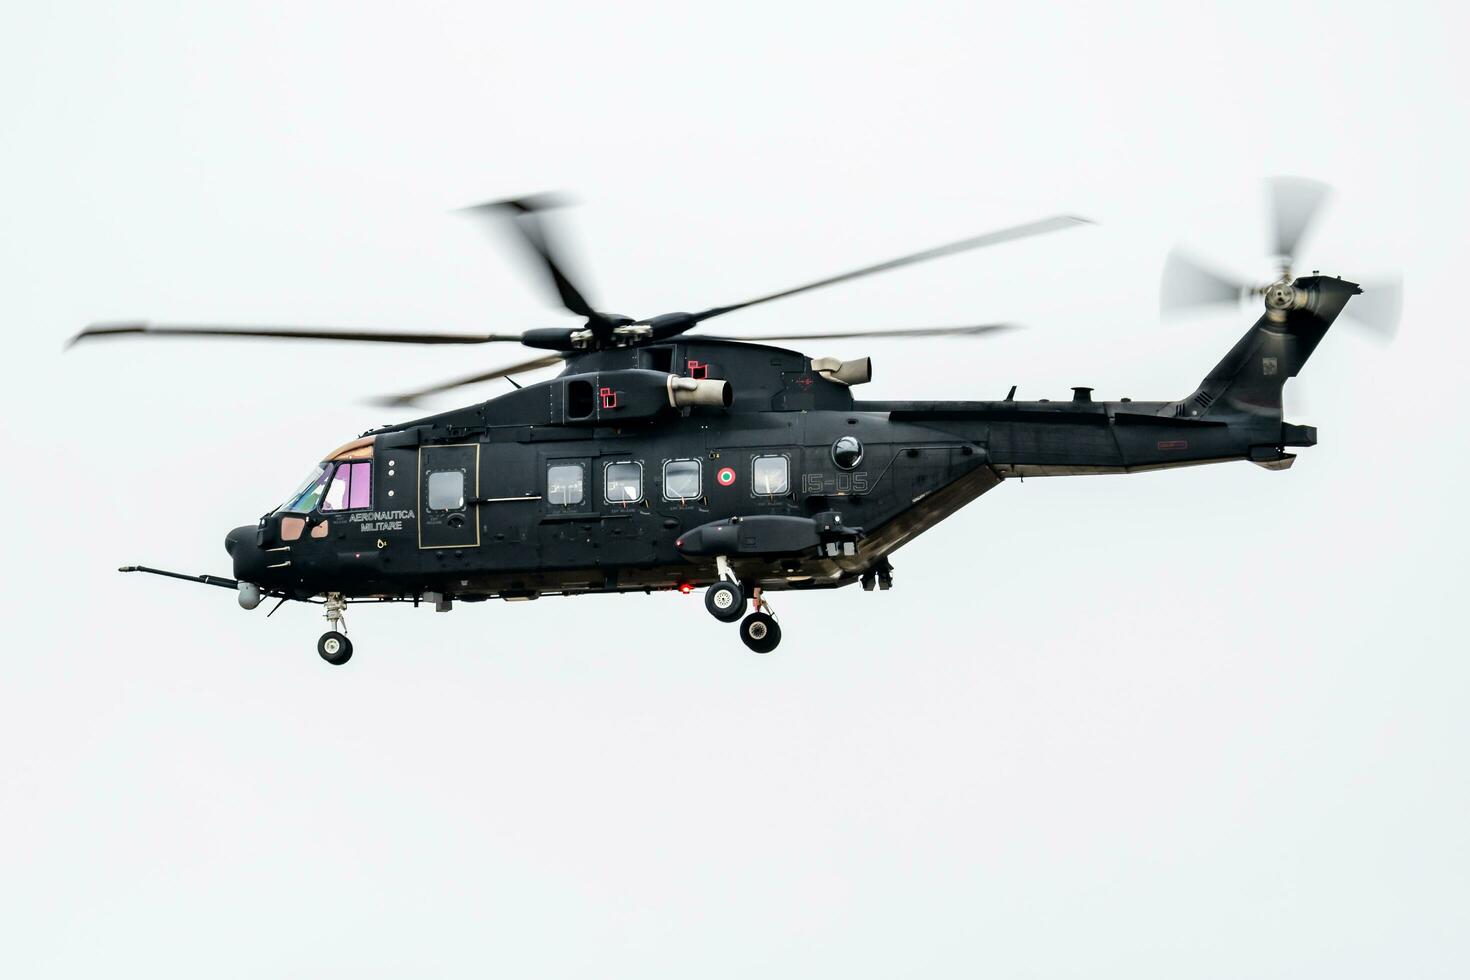 italien air Obliger Léonardo hh-101a césar mm81868 spécification opérations hélicoptère arrivée et atterrissage pour riat Royal international air tatouage 2018 salon de l'aéronautique photo